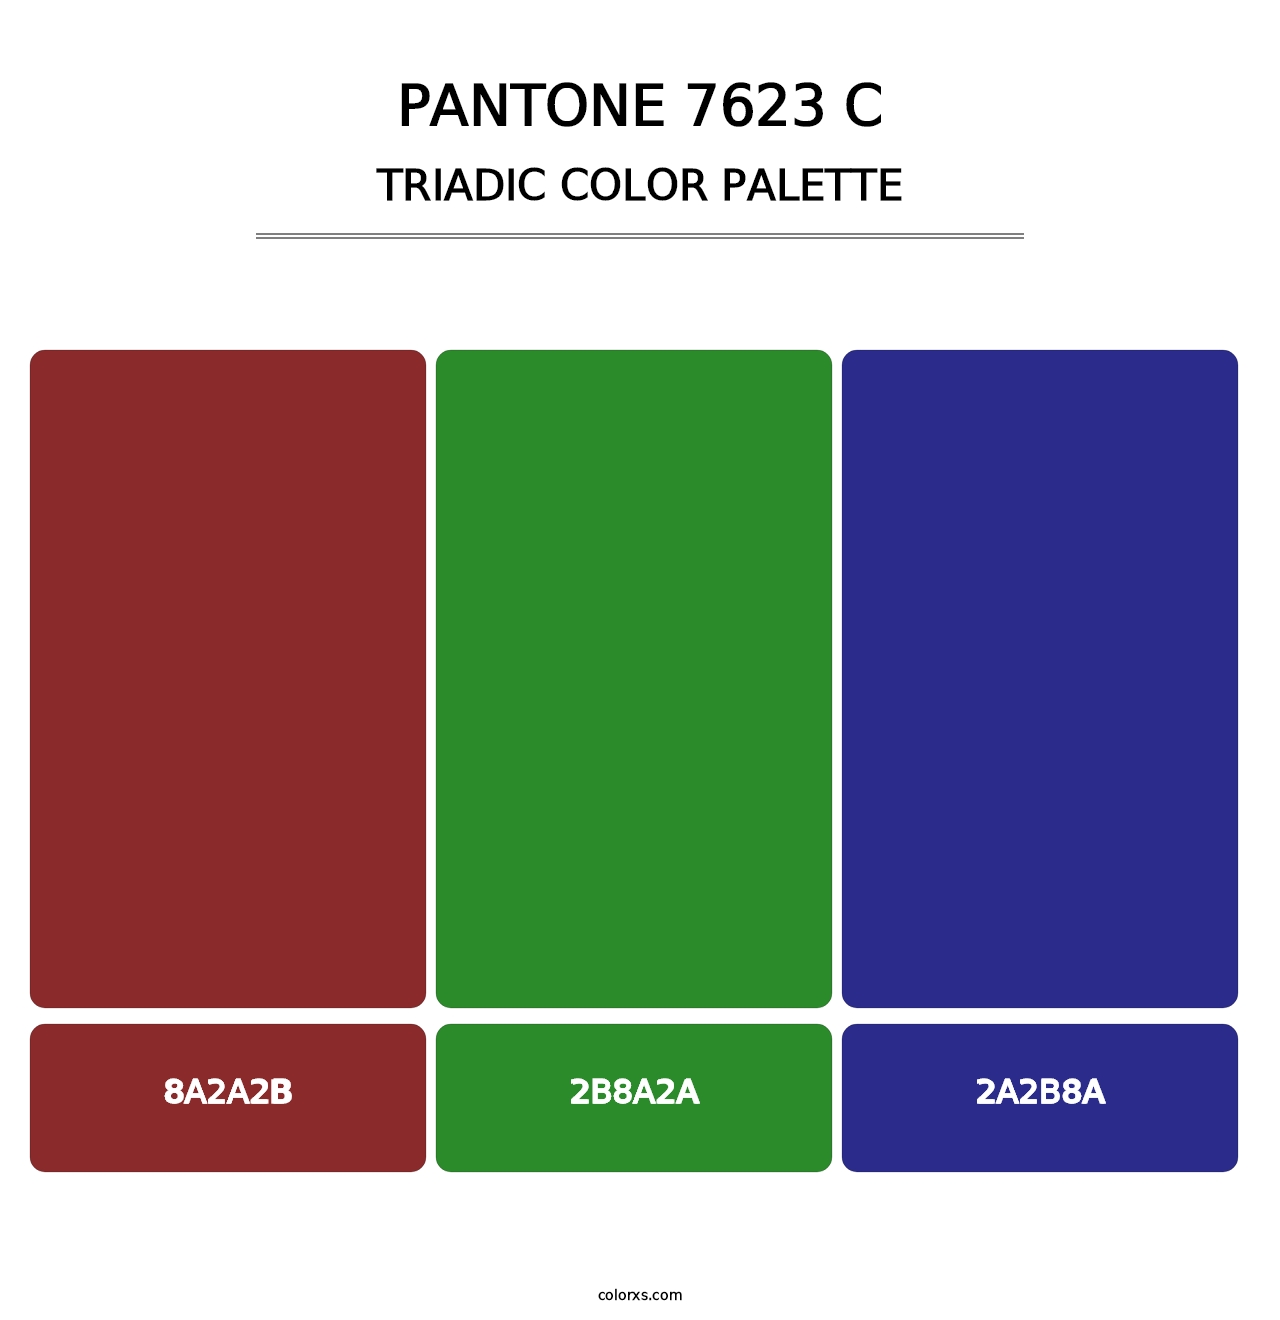 PANTONE 7623 C - Triadic Color Palette